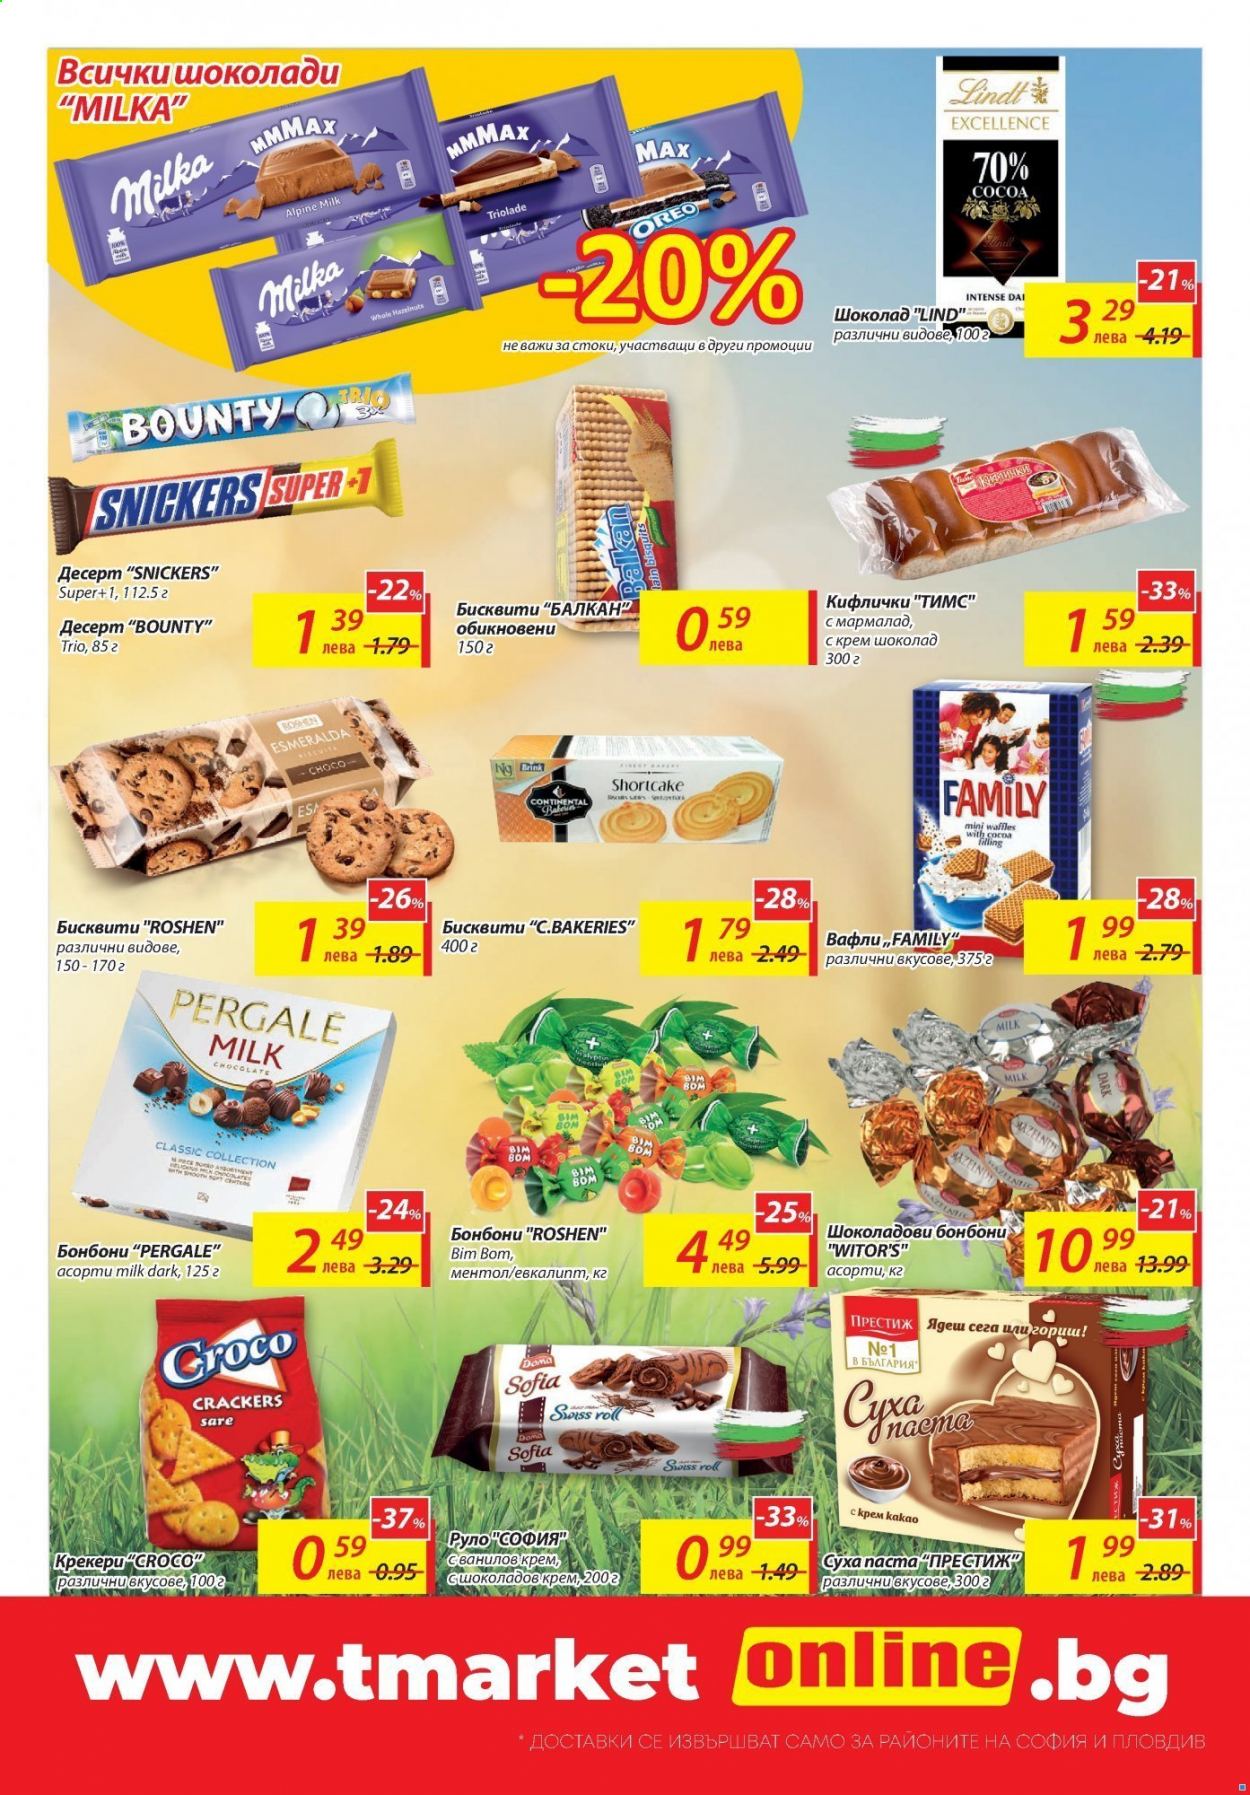 thumbnail - Брошура на Т Маркет - 11.05.2021 - 17.05.2021 - Продавани продукти - Milka, Lindt, бисквити, вафла, шоколад, шоколадови бонбони. Страница 9.